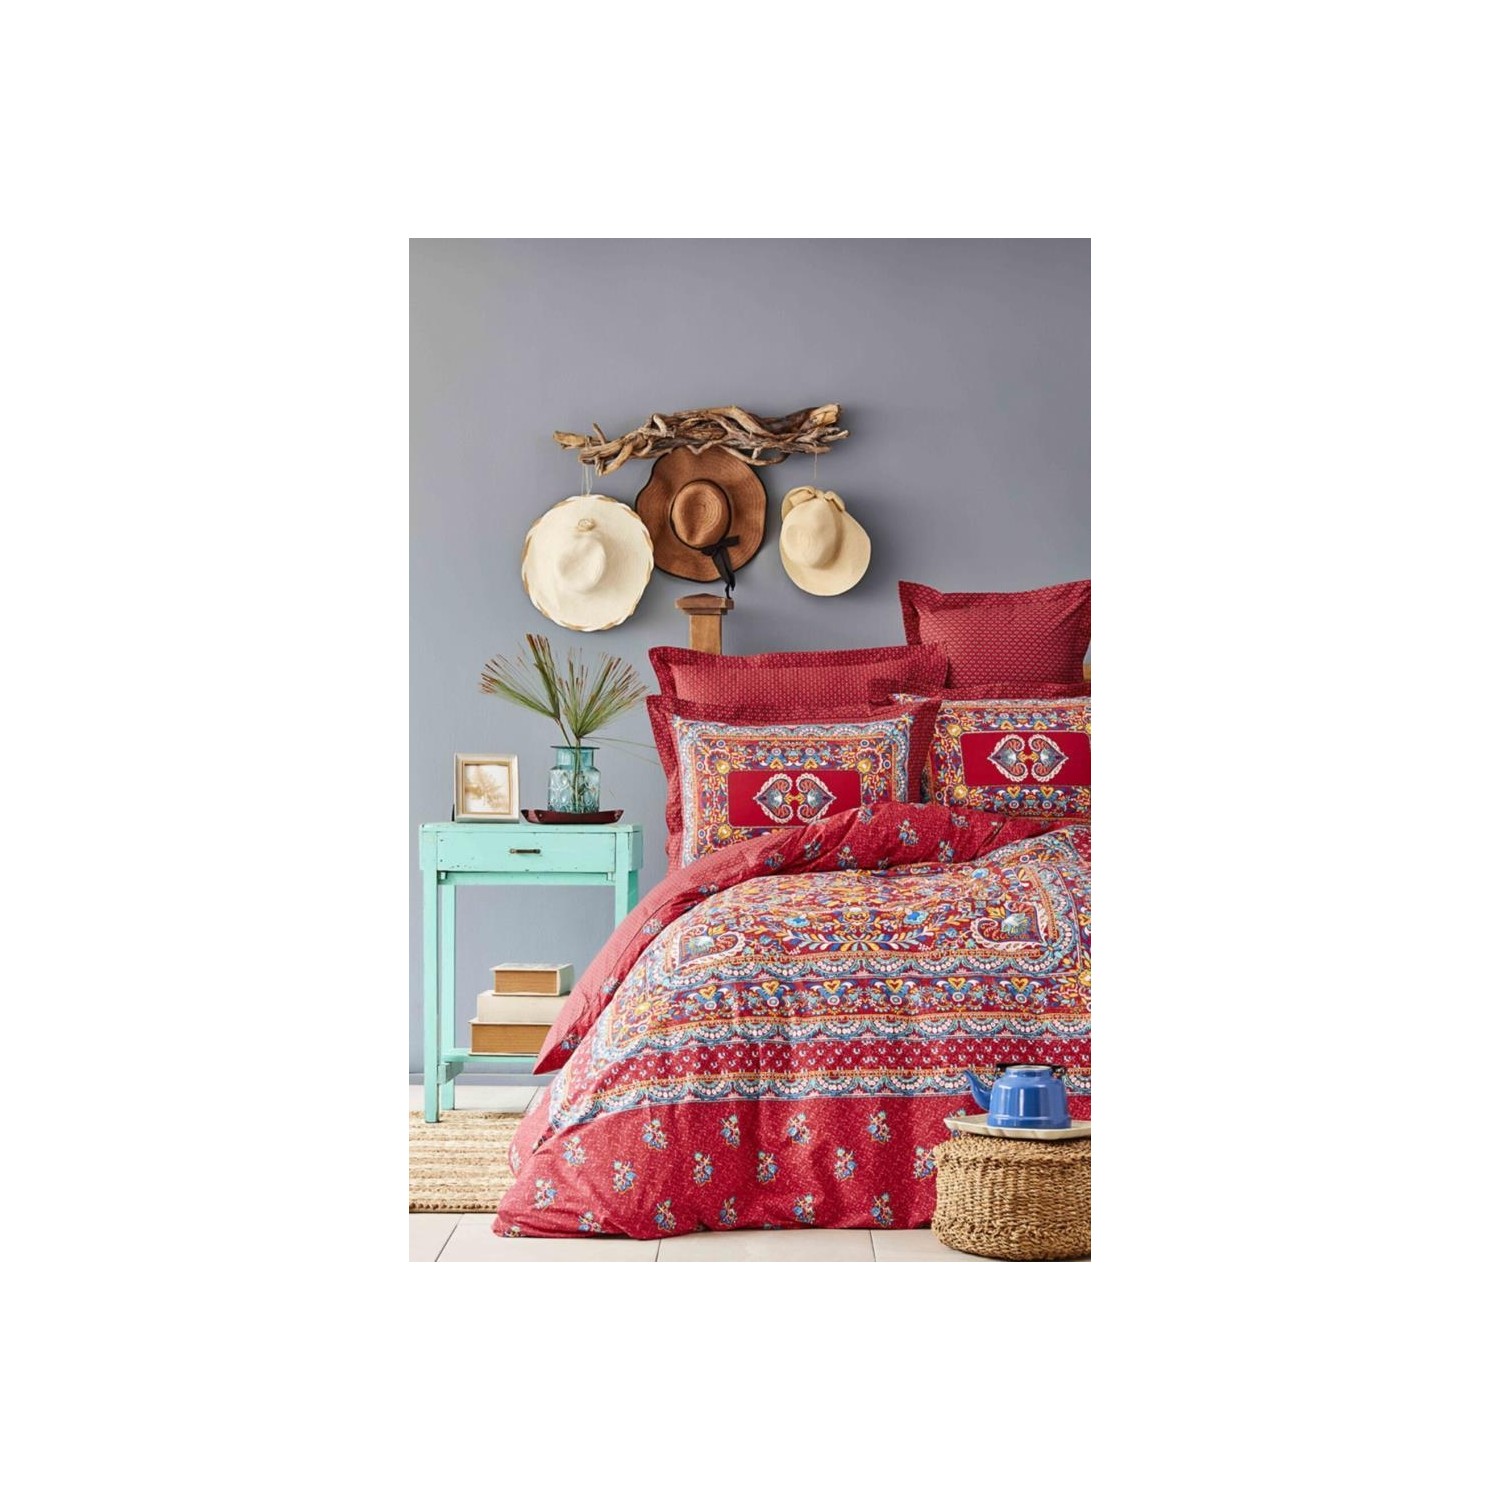 karaca home комплект постельного белья цвета хаки окрашенный в двойной пряже vetro khaki Karaca Home Комплект постельного белья Ranforce Axis Red